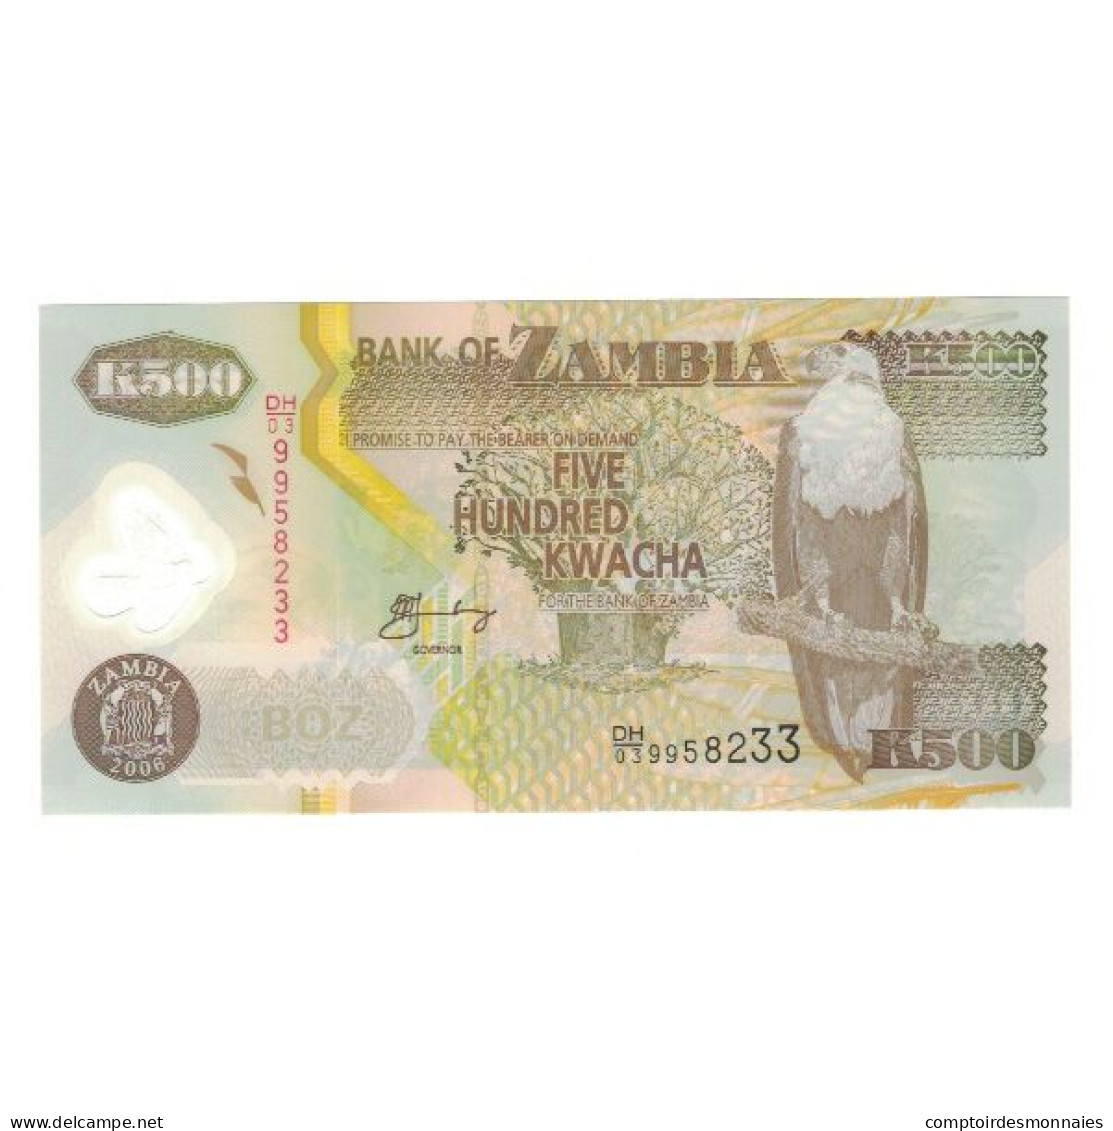 Billet, Zambie, 500 Kwacha, 2006, KM:43e, NEUF - Zambie